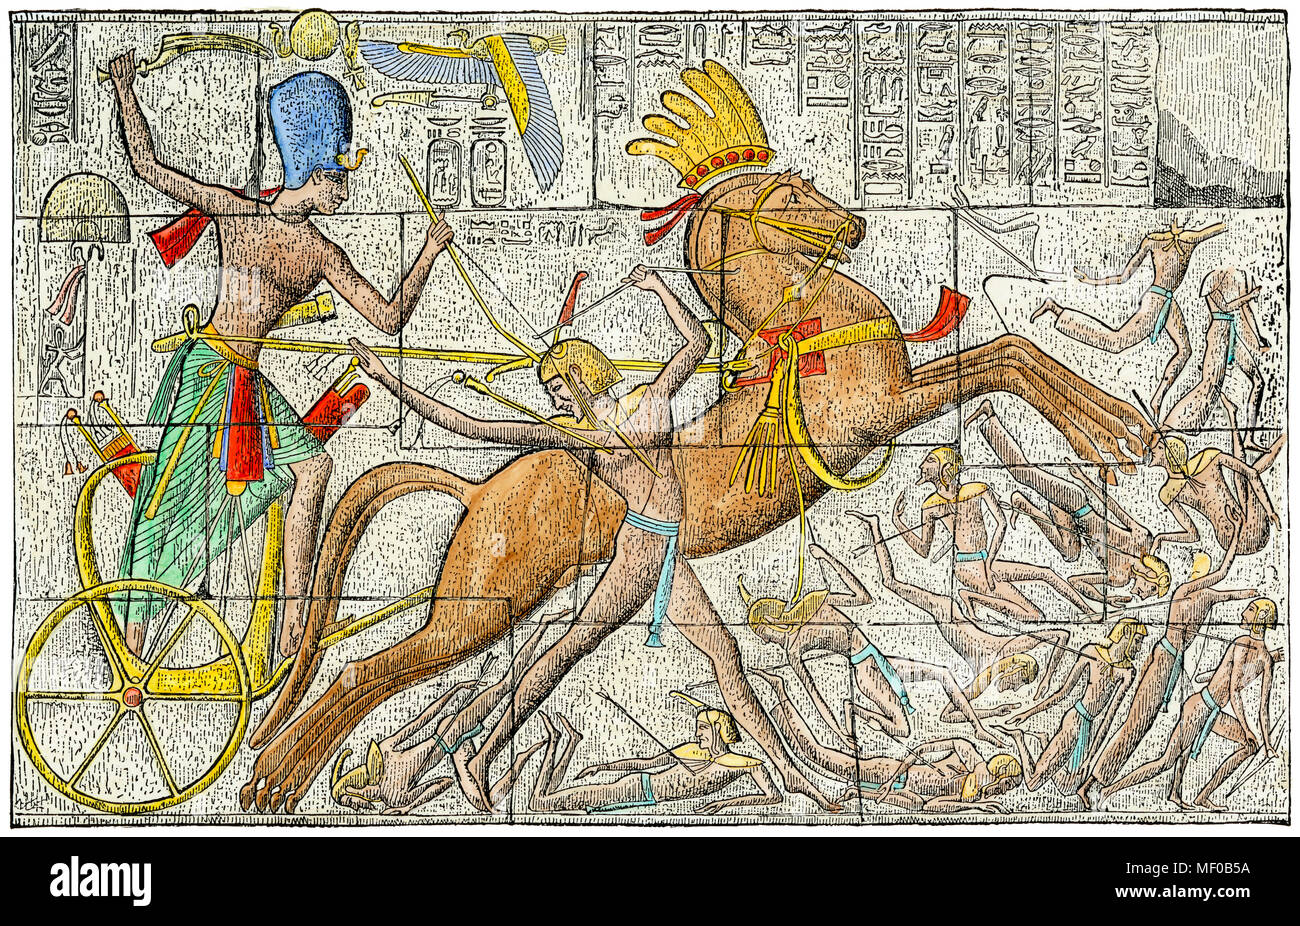 La conduite d'un pharaon char de bataille, l'Égypte ancienne. À la main, gravure d'un bas-relief Banque D'Images